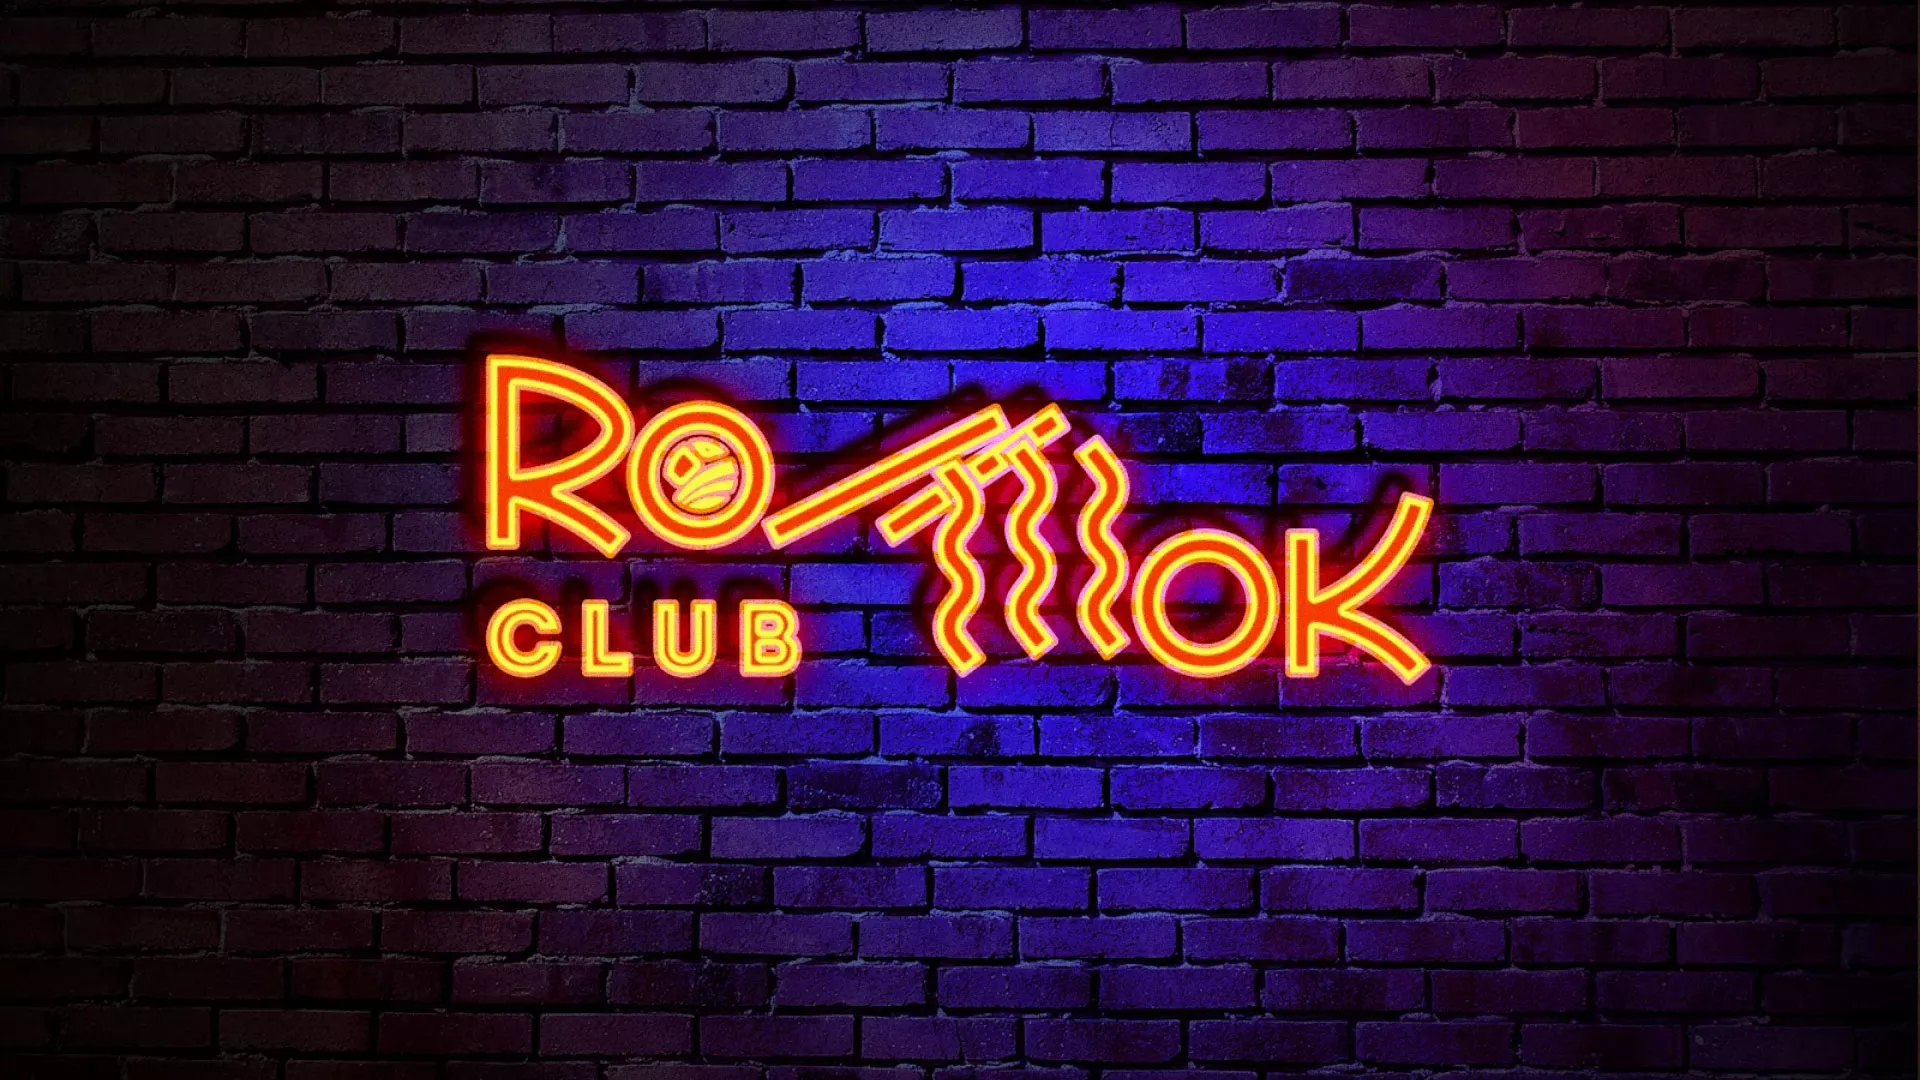 Разработка интерьерной вывески суши-бара «Roll Wok Club» в Хилоке